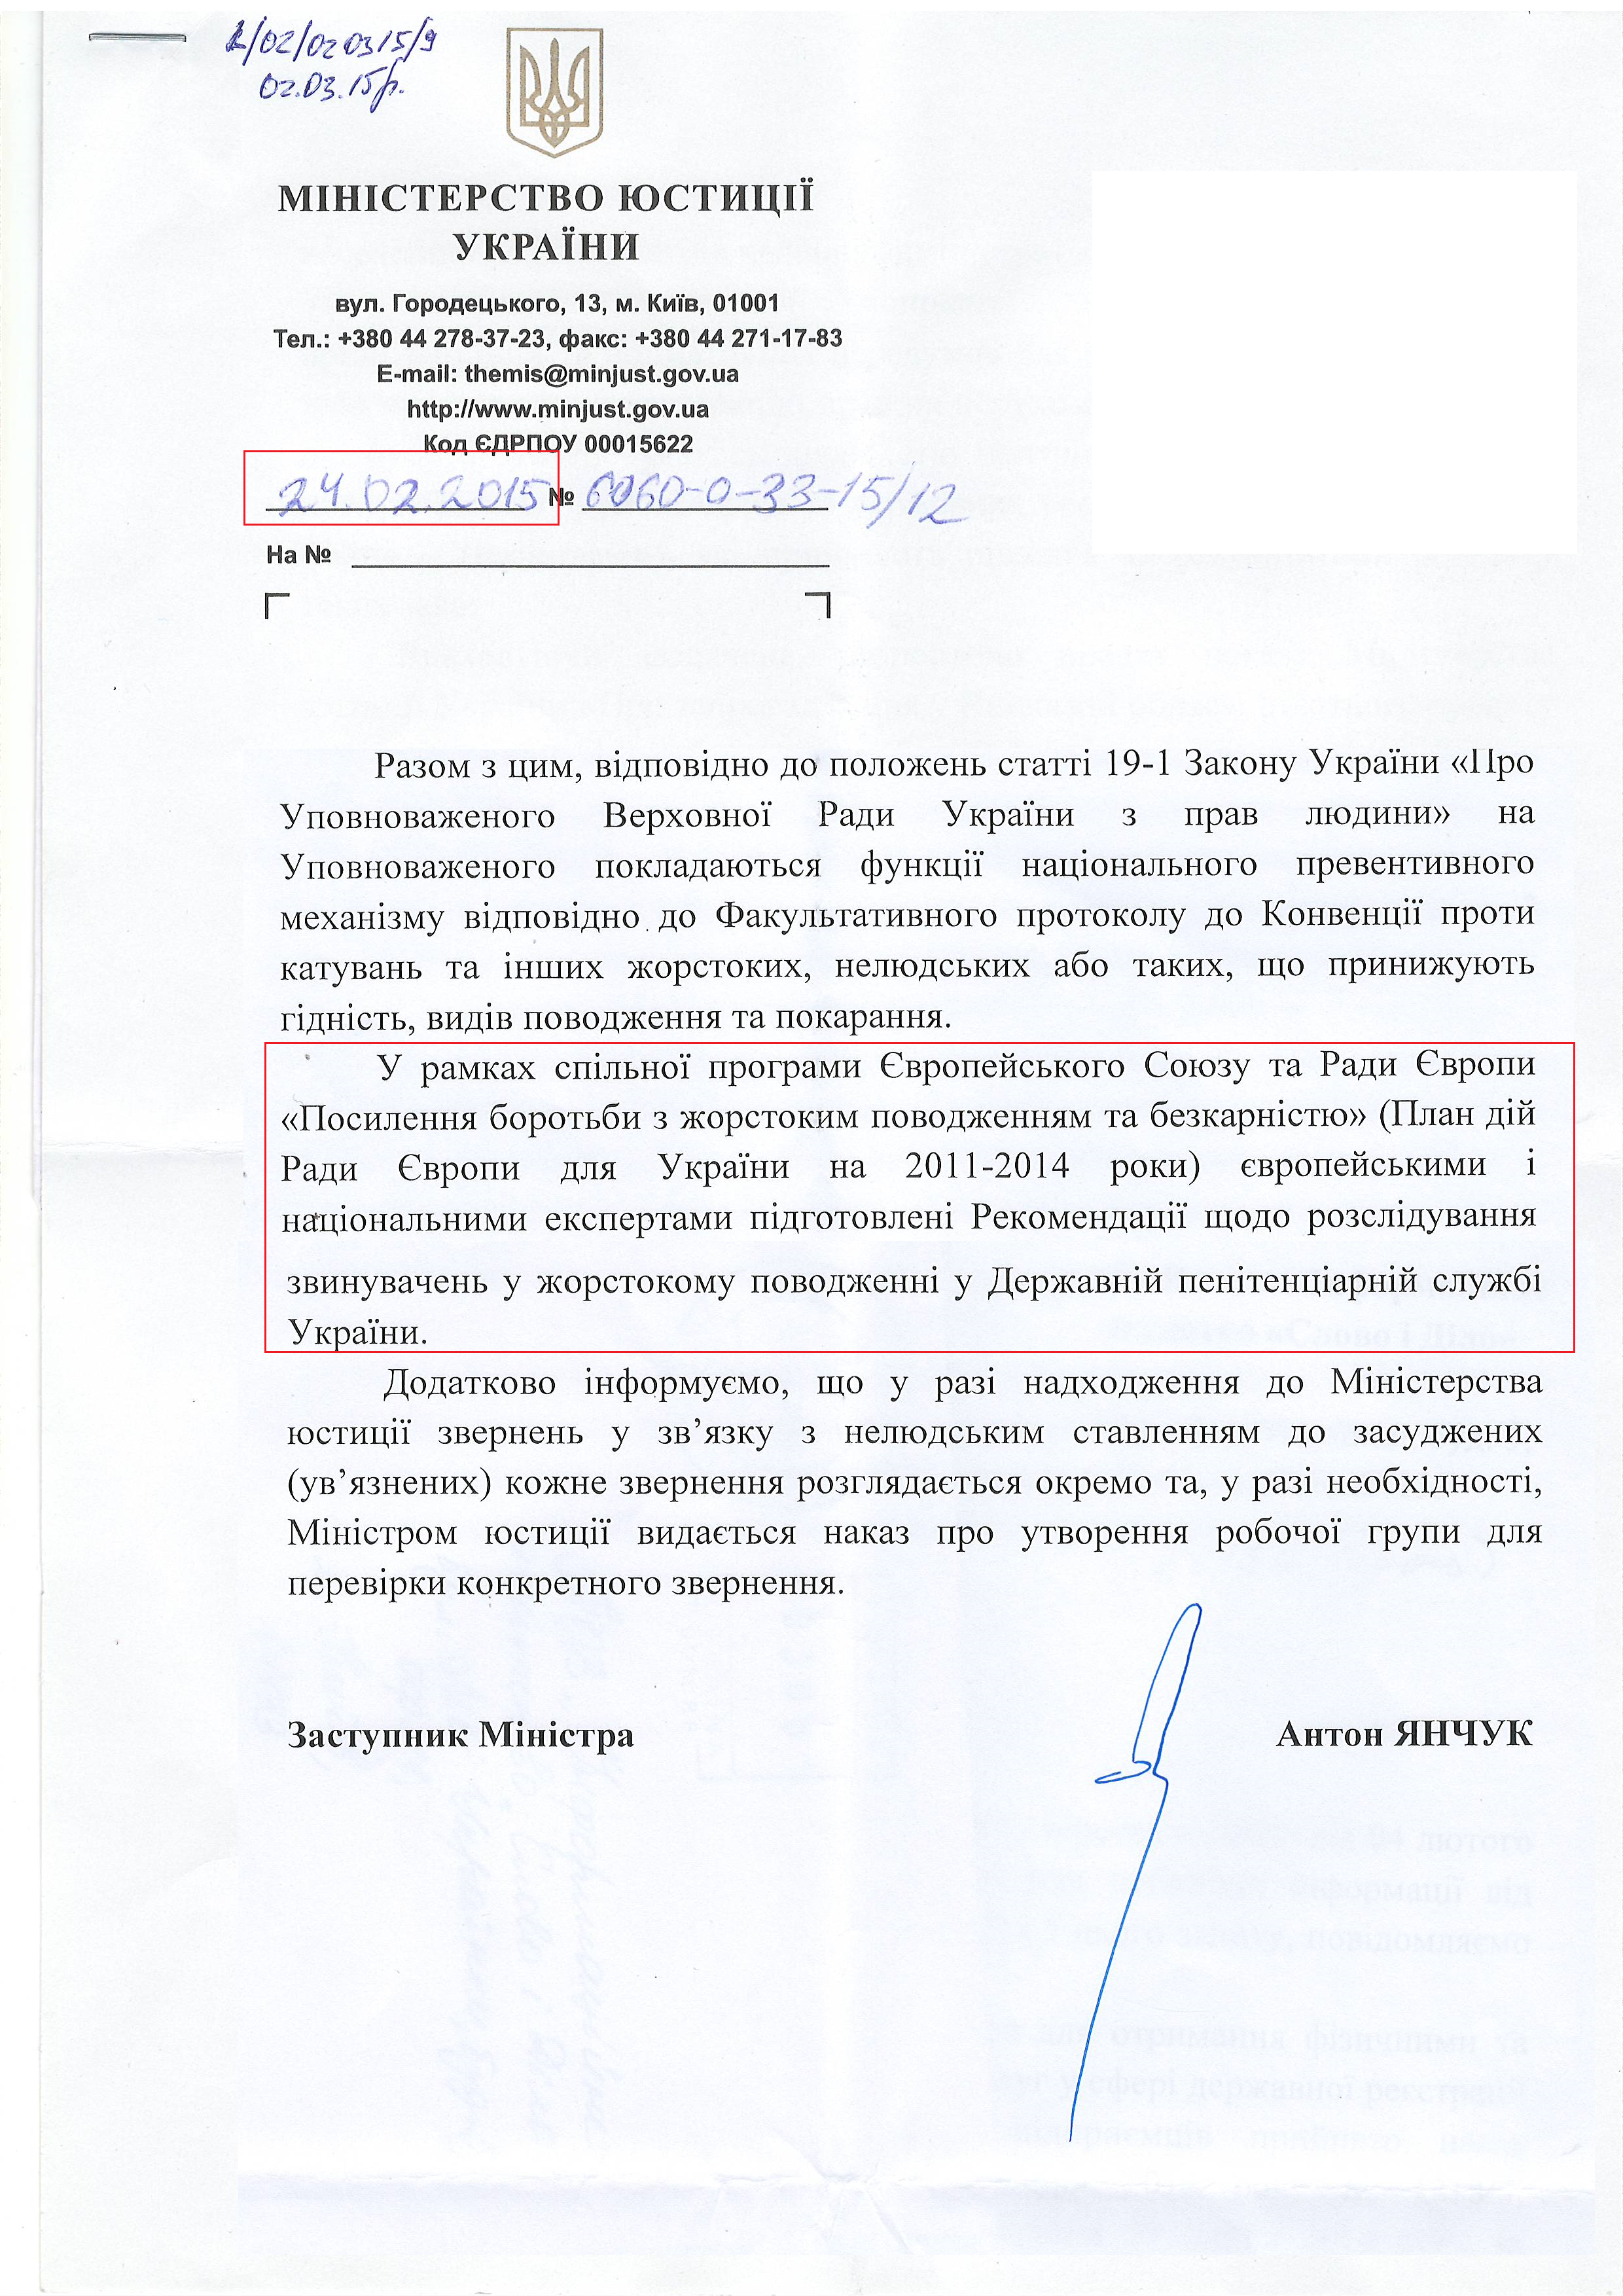 Лист Міністерства юстиції України від 24 січня 2015 року